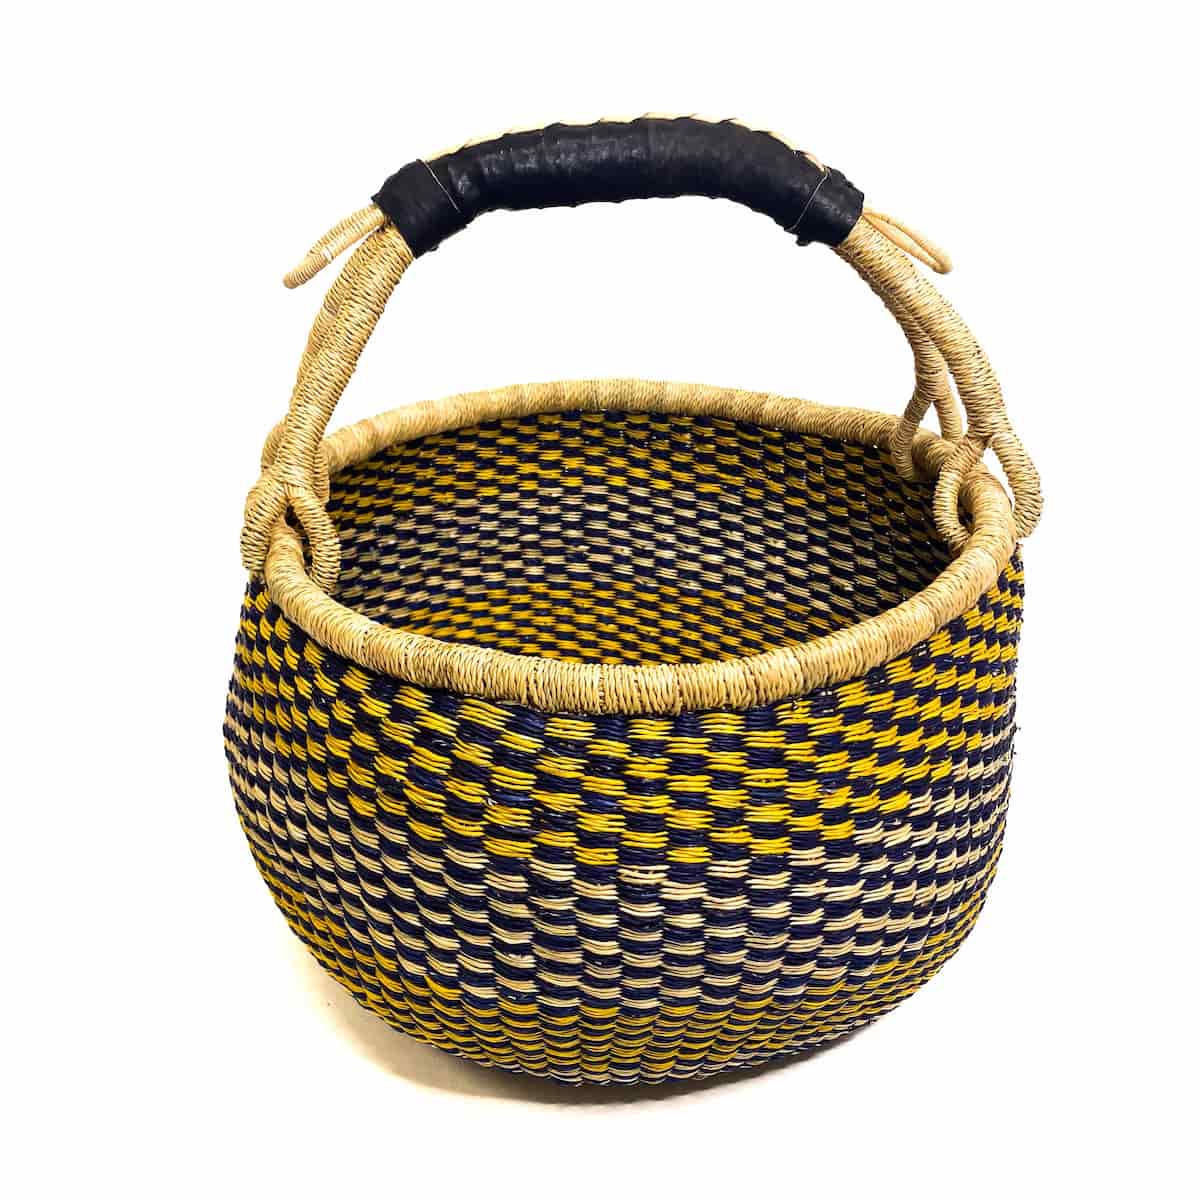 Medium Round Baskets Chequered Yellow and Black